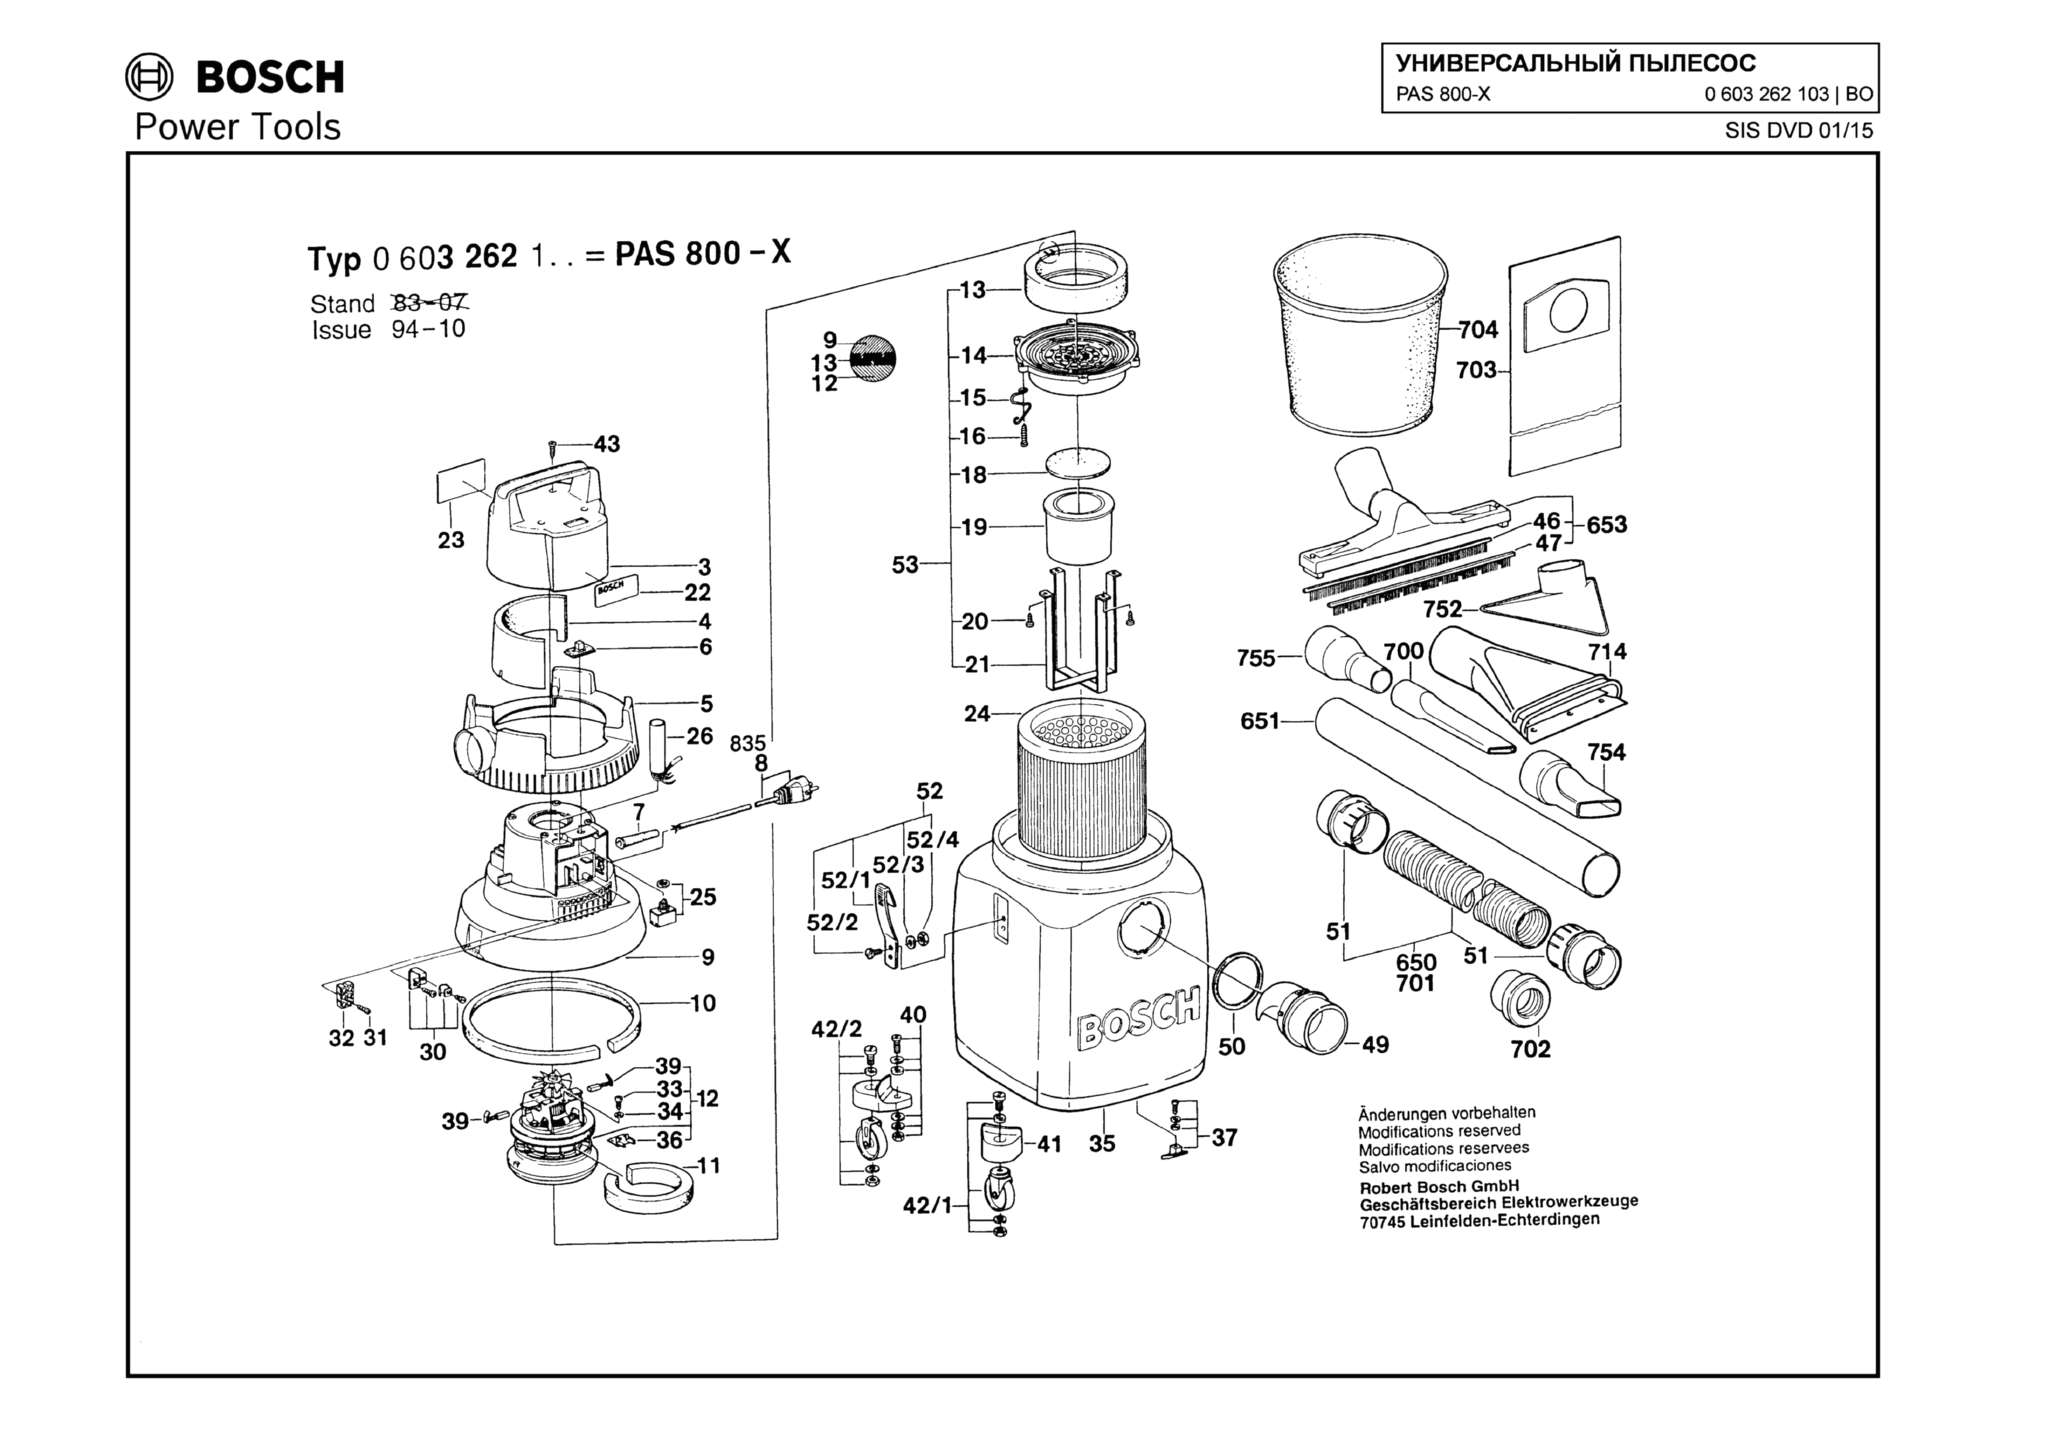 Запчасти, схема и деталировка Bosch PAS 800 X (ТИП 0603262103)